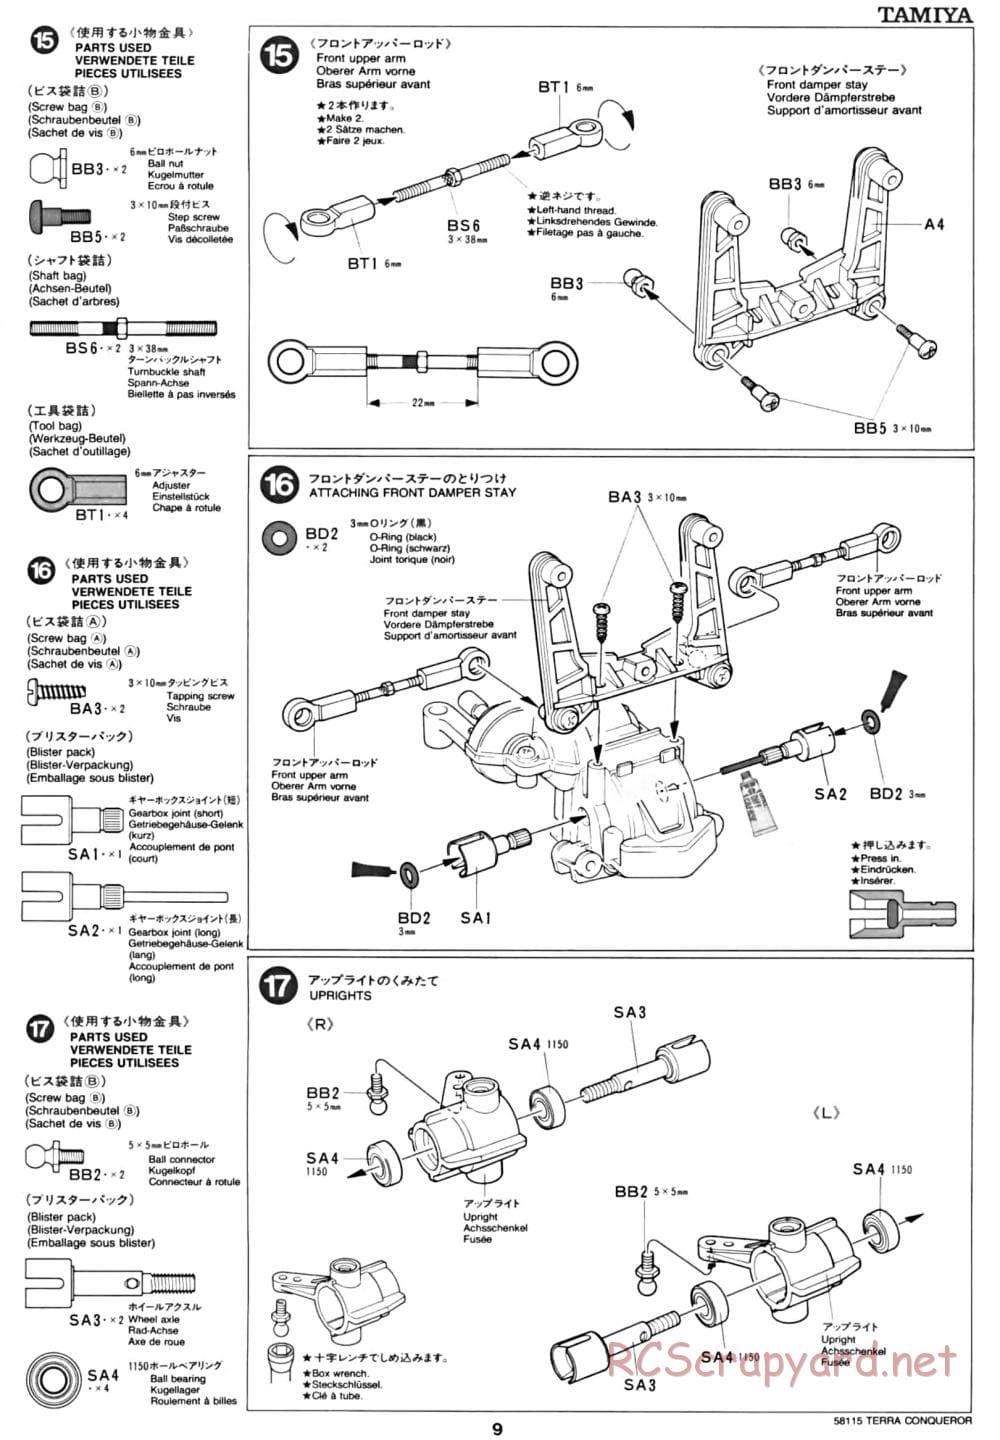 Tamiya - Terra Conqueror Chassis - Manual - Page 9